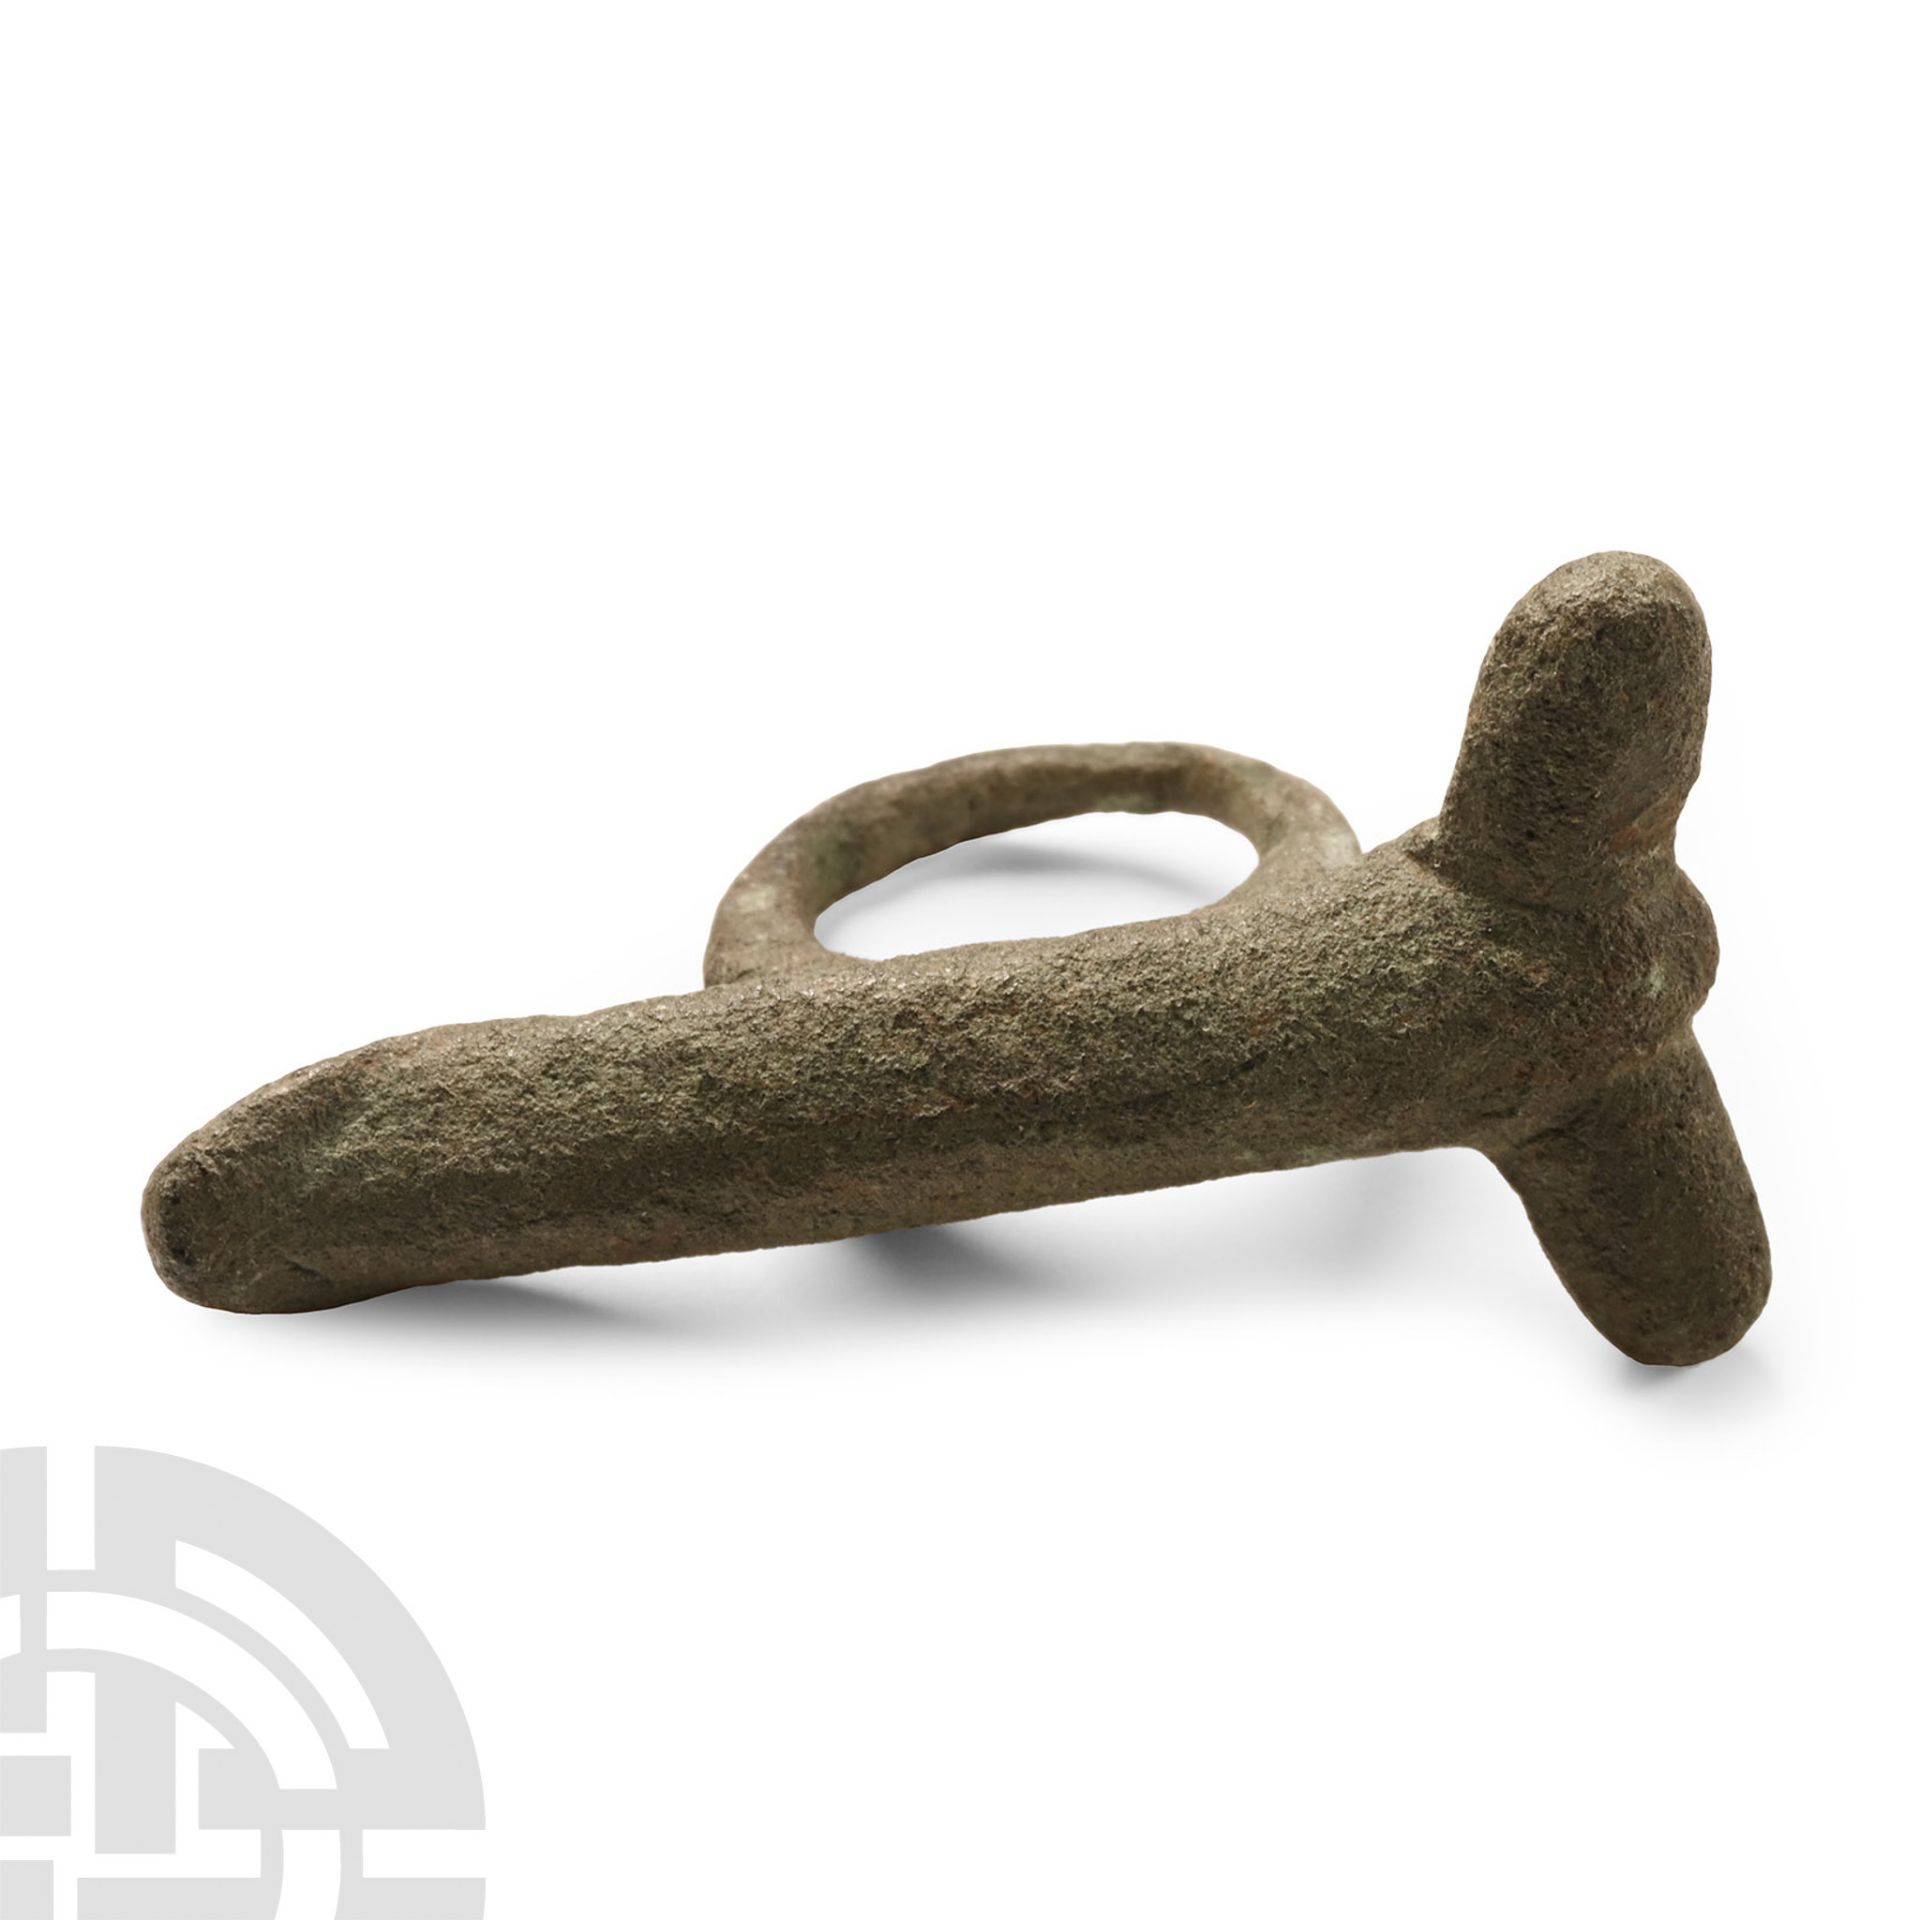 Roman Bronze Phallic Pendant